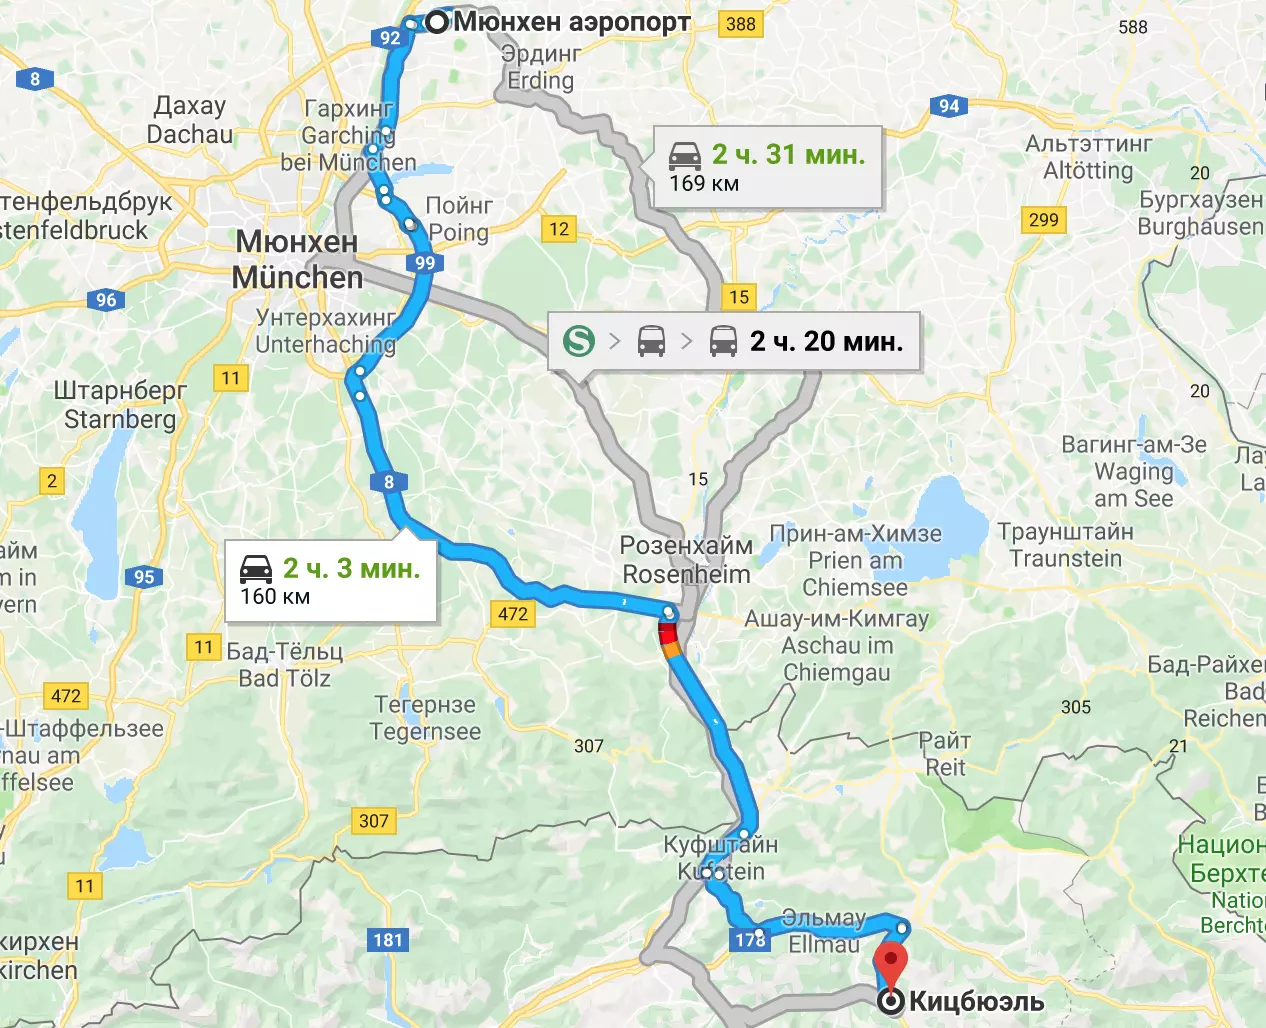 Мюнхен от аэропорта до центра - как добраться в мюнхен и обратно?